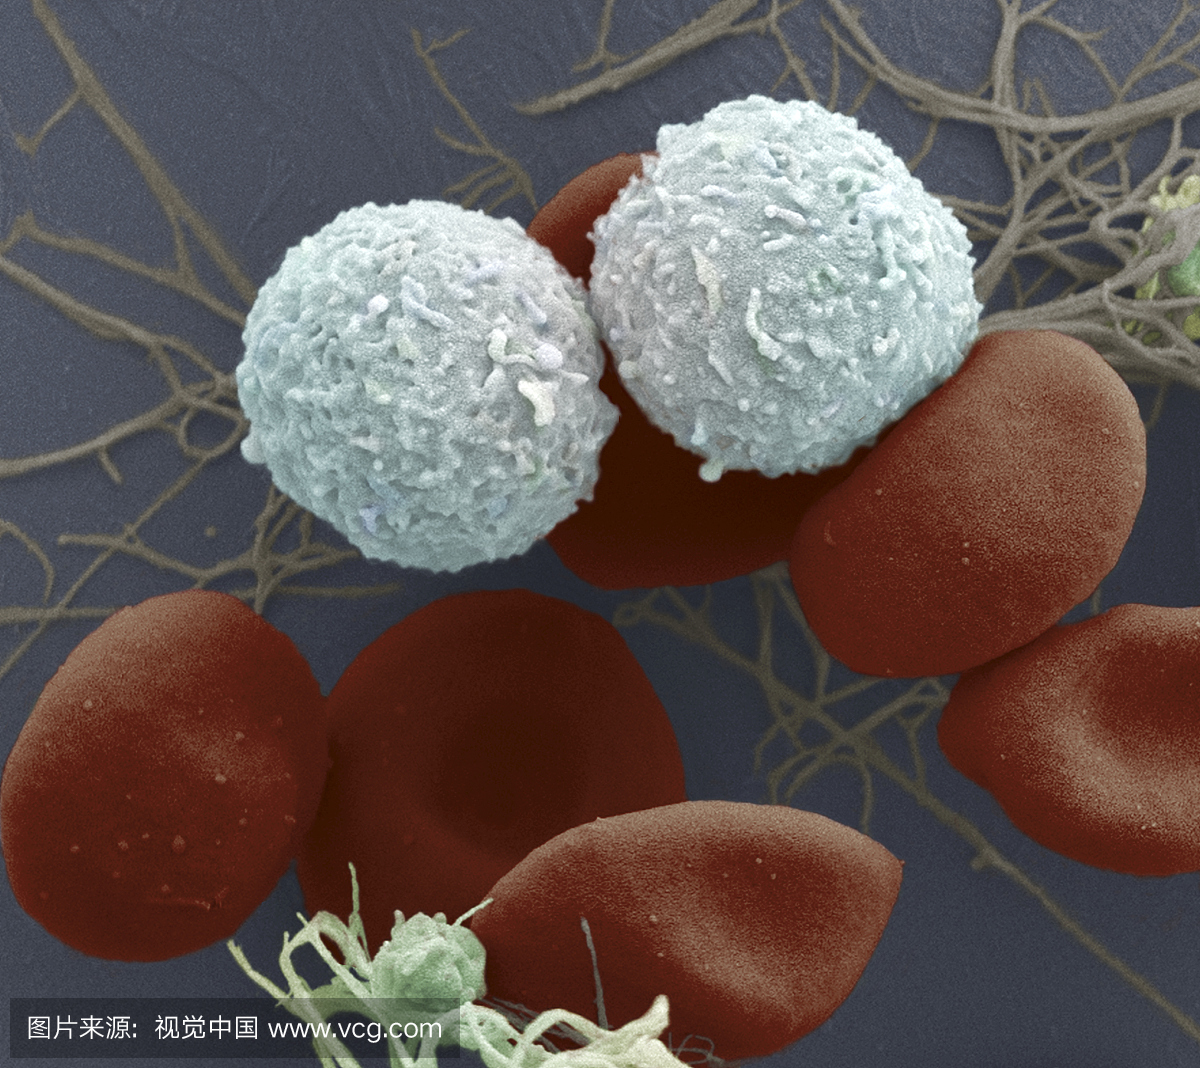 红细胞,两个白细胞和两个血小板。 SEM X500